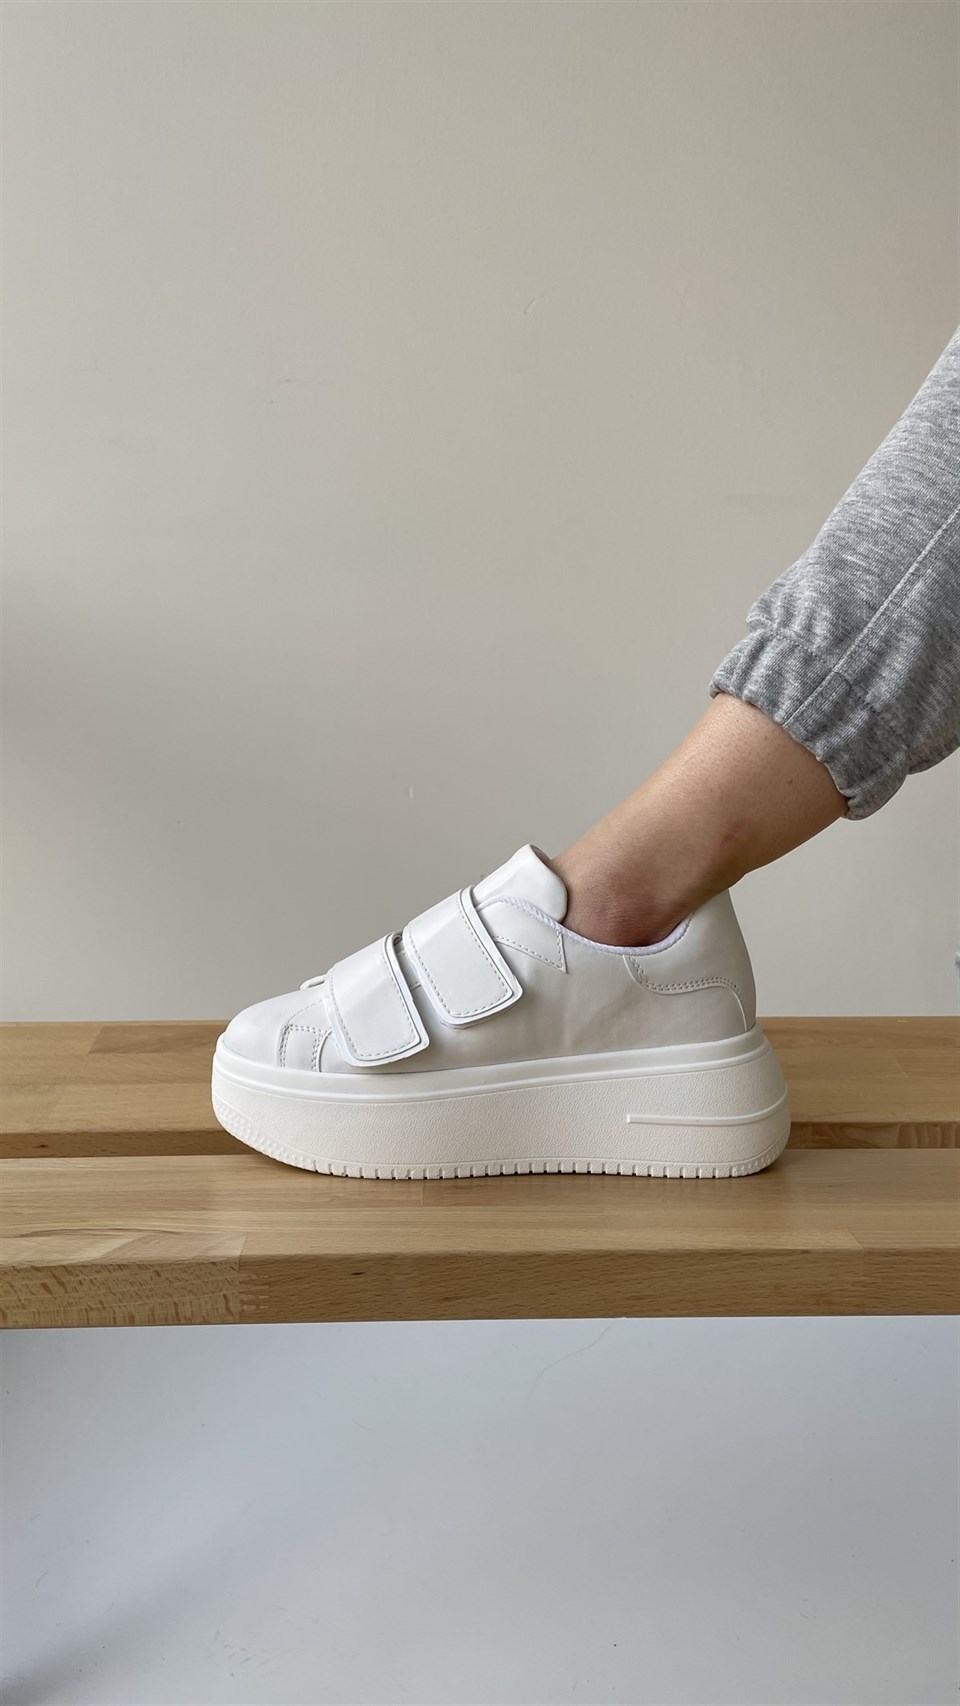 Kadın Beyaz Cırt Cırtlı Sneakers Spor Ayakkabı-Taban 5 cm-Yürüyüş Ayakkabısı  Yüksek Tabanlı Bantlı